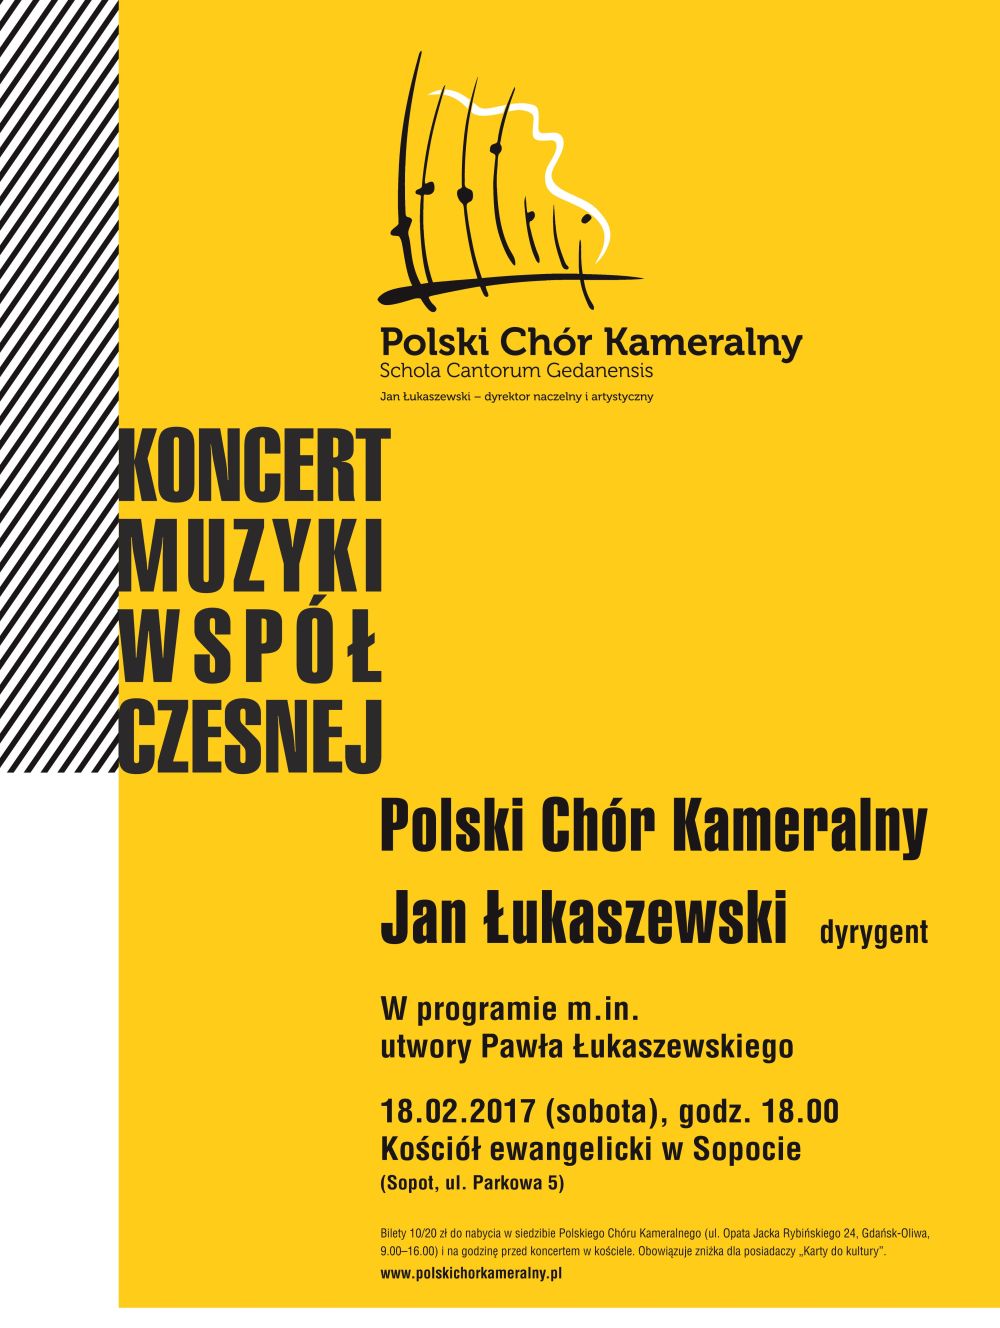 Koncert Muzyki Współczesnej, Polski Chór Kameralny (źródło: materiały prasowe organizatora)